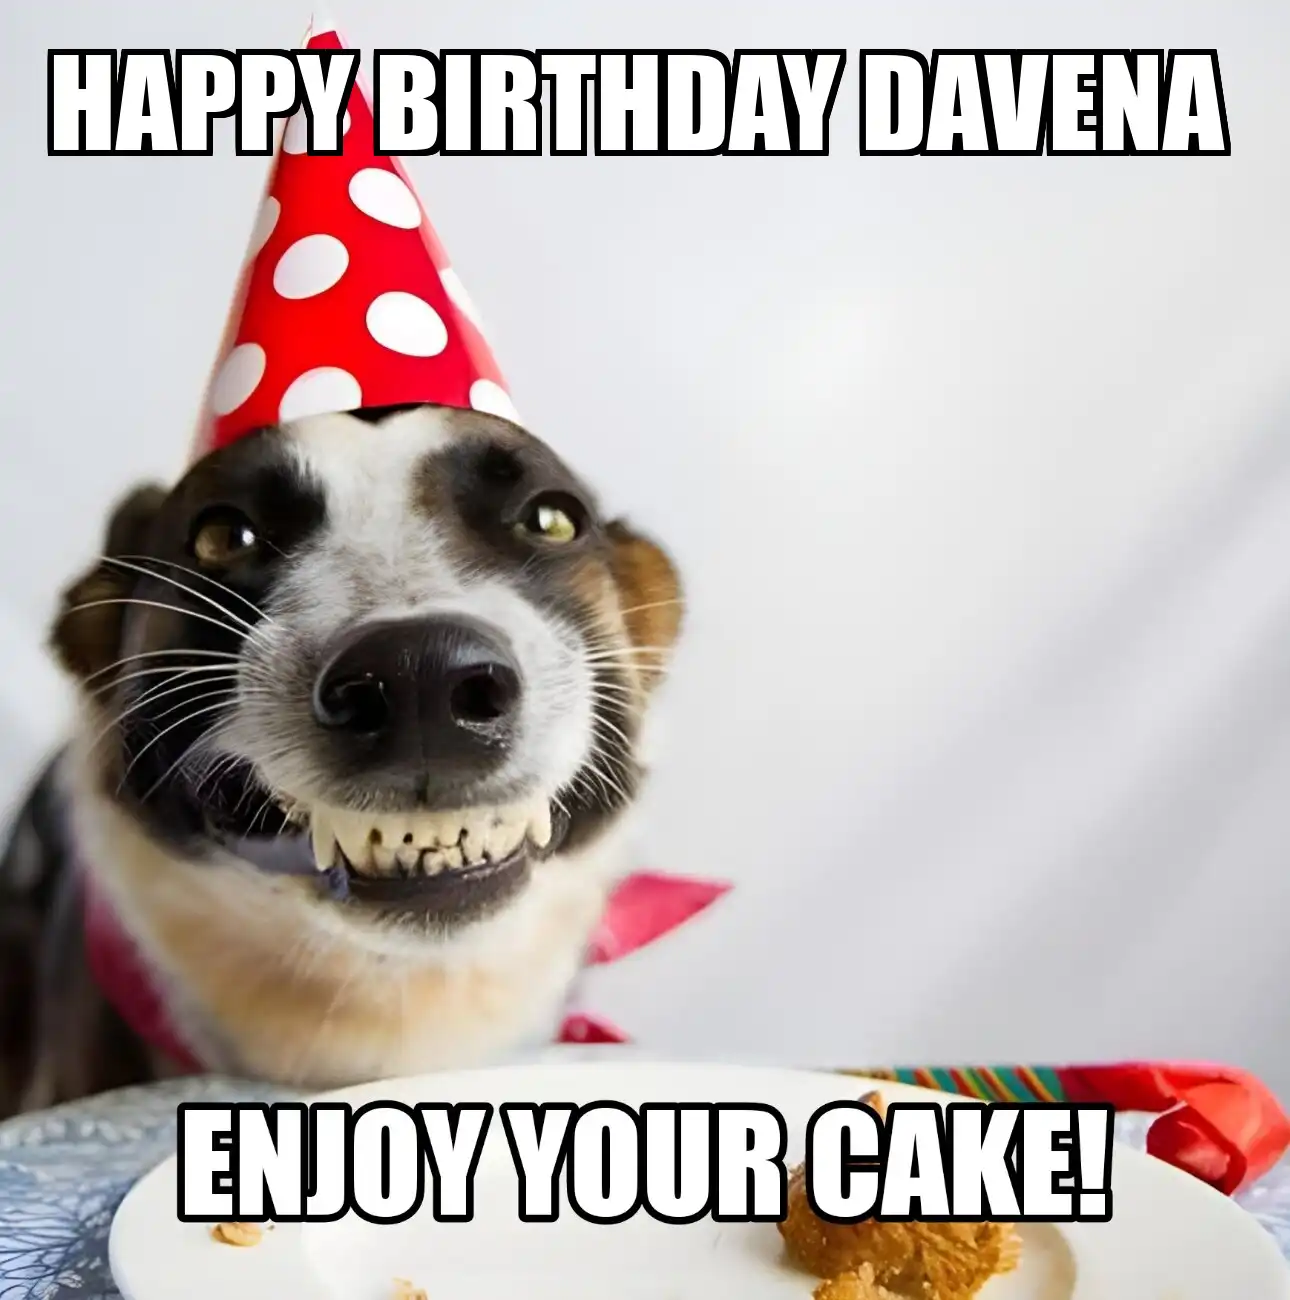 Happy Birthday Davena Enjoy Your Cake Dog Meme